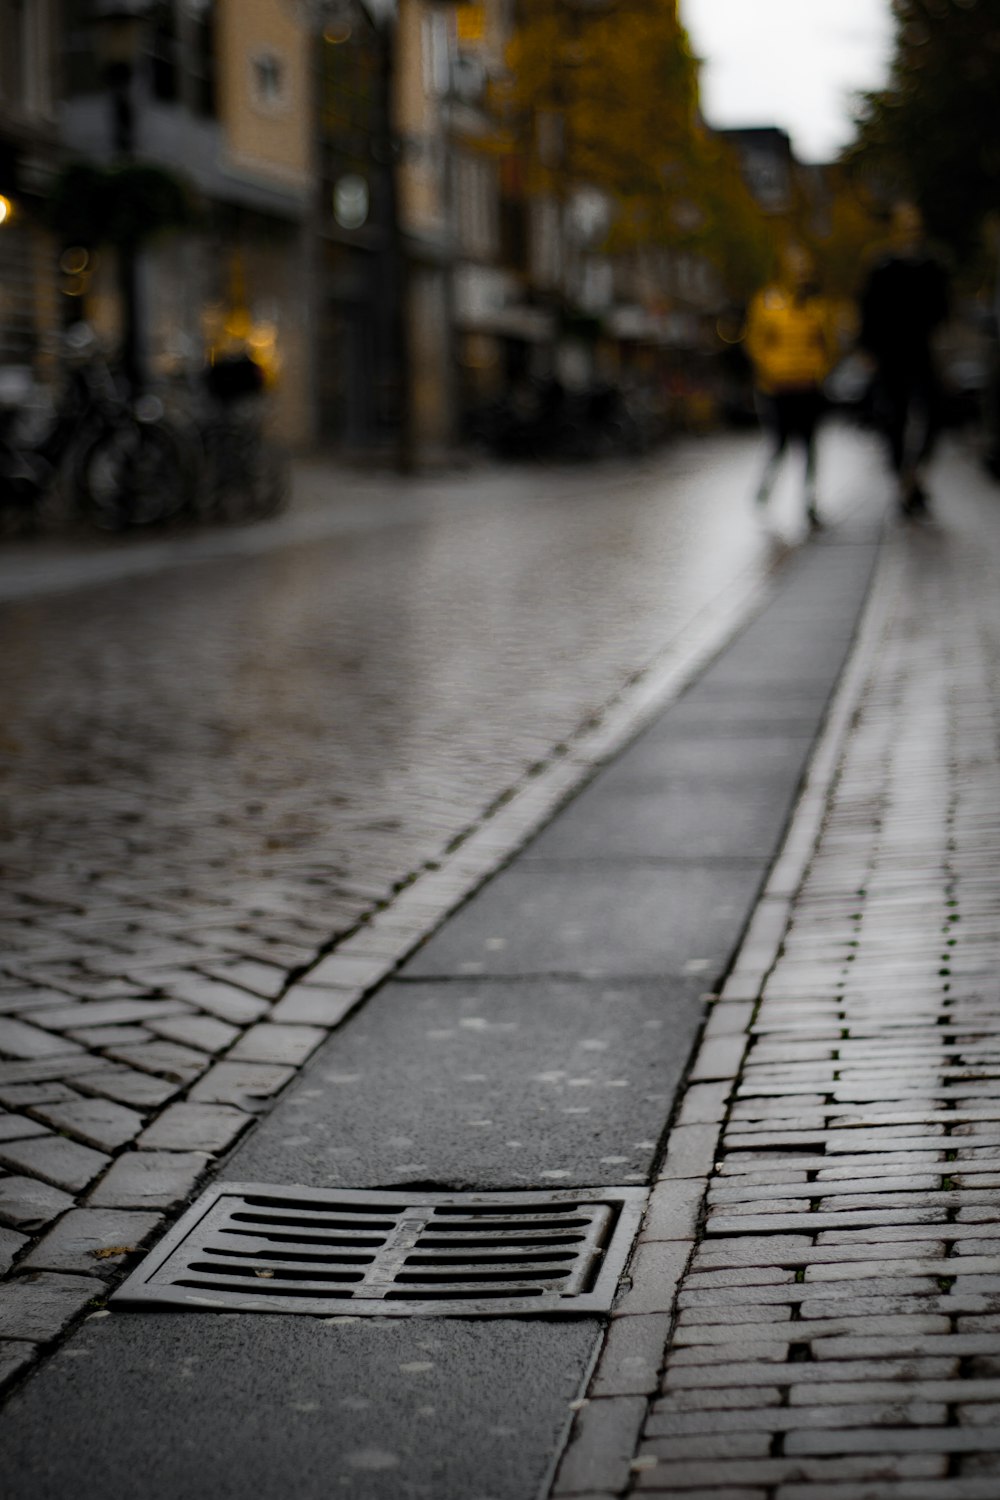 a brick sidewalk with people walking on it